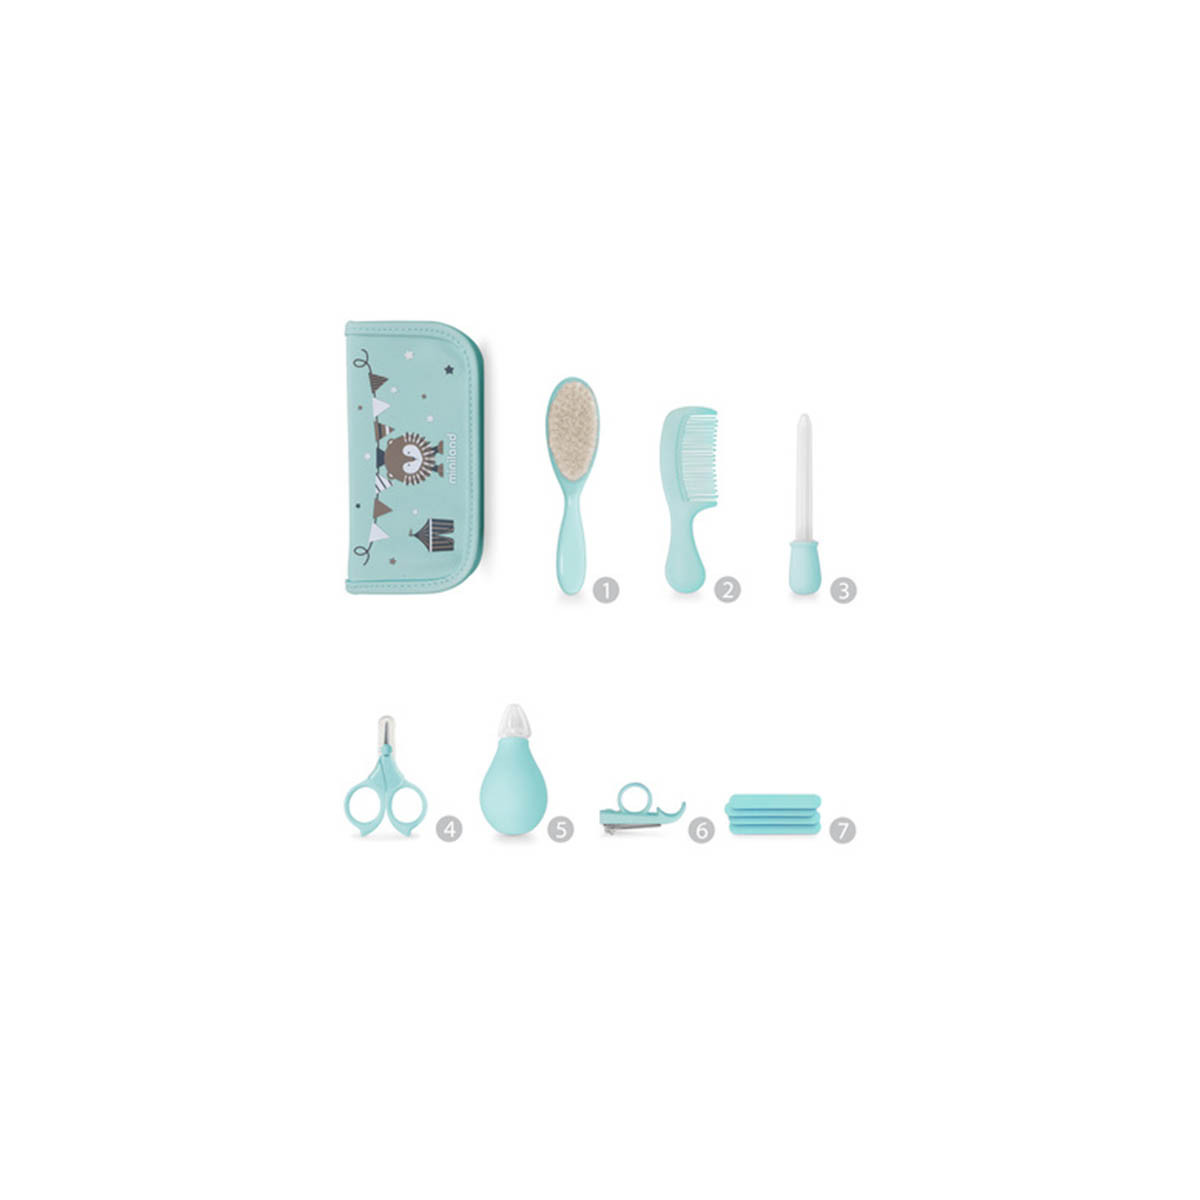 Baby Kit de Miniland en color azure. Kit de baño con múltiples accesorios y estuche.